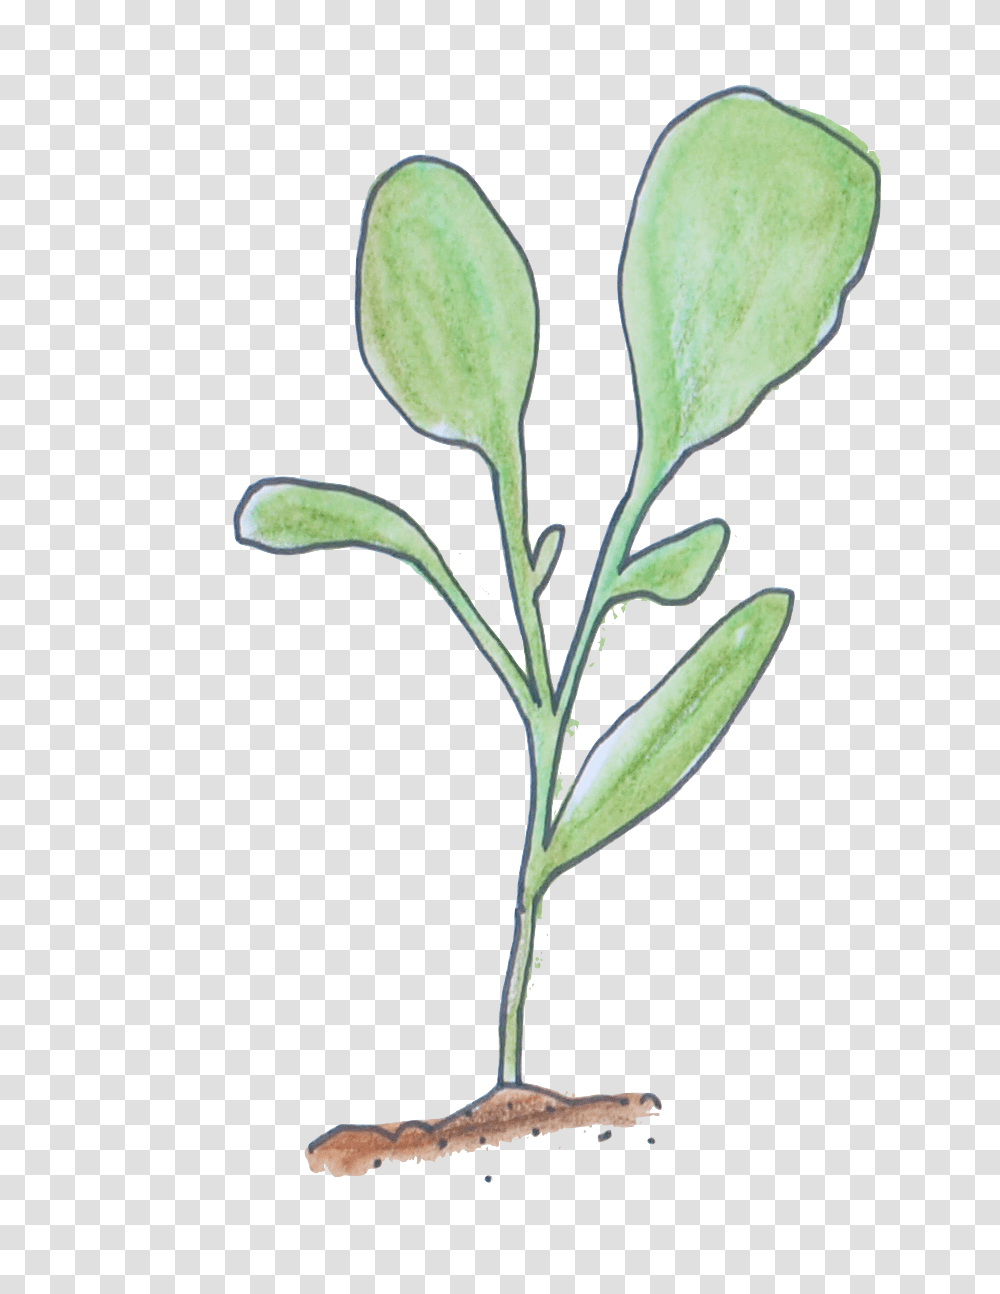 Seedling, Plant, Flower, Leaf, Produce Transparent Png